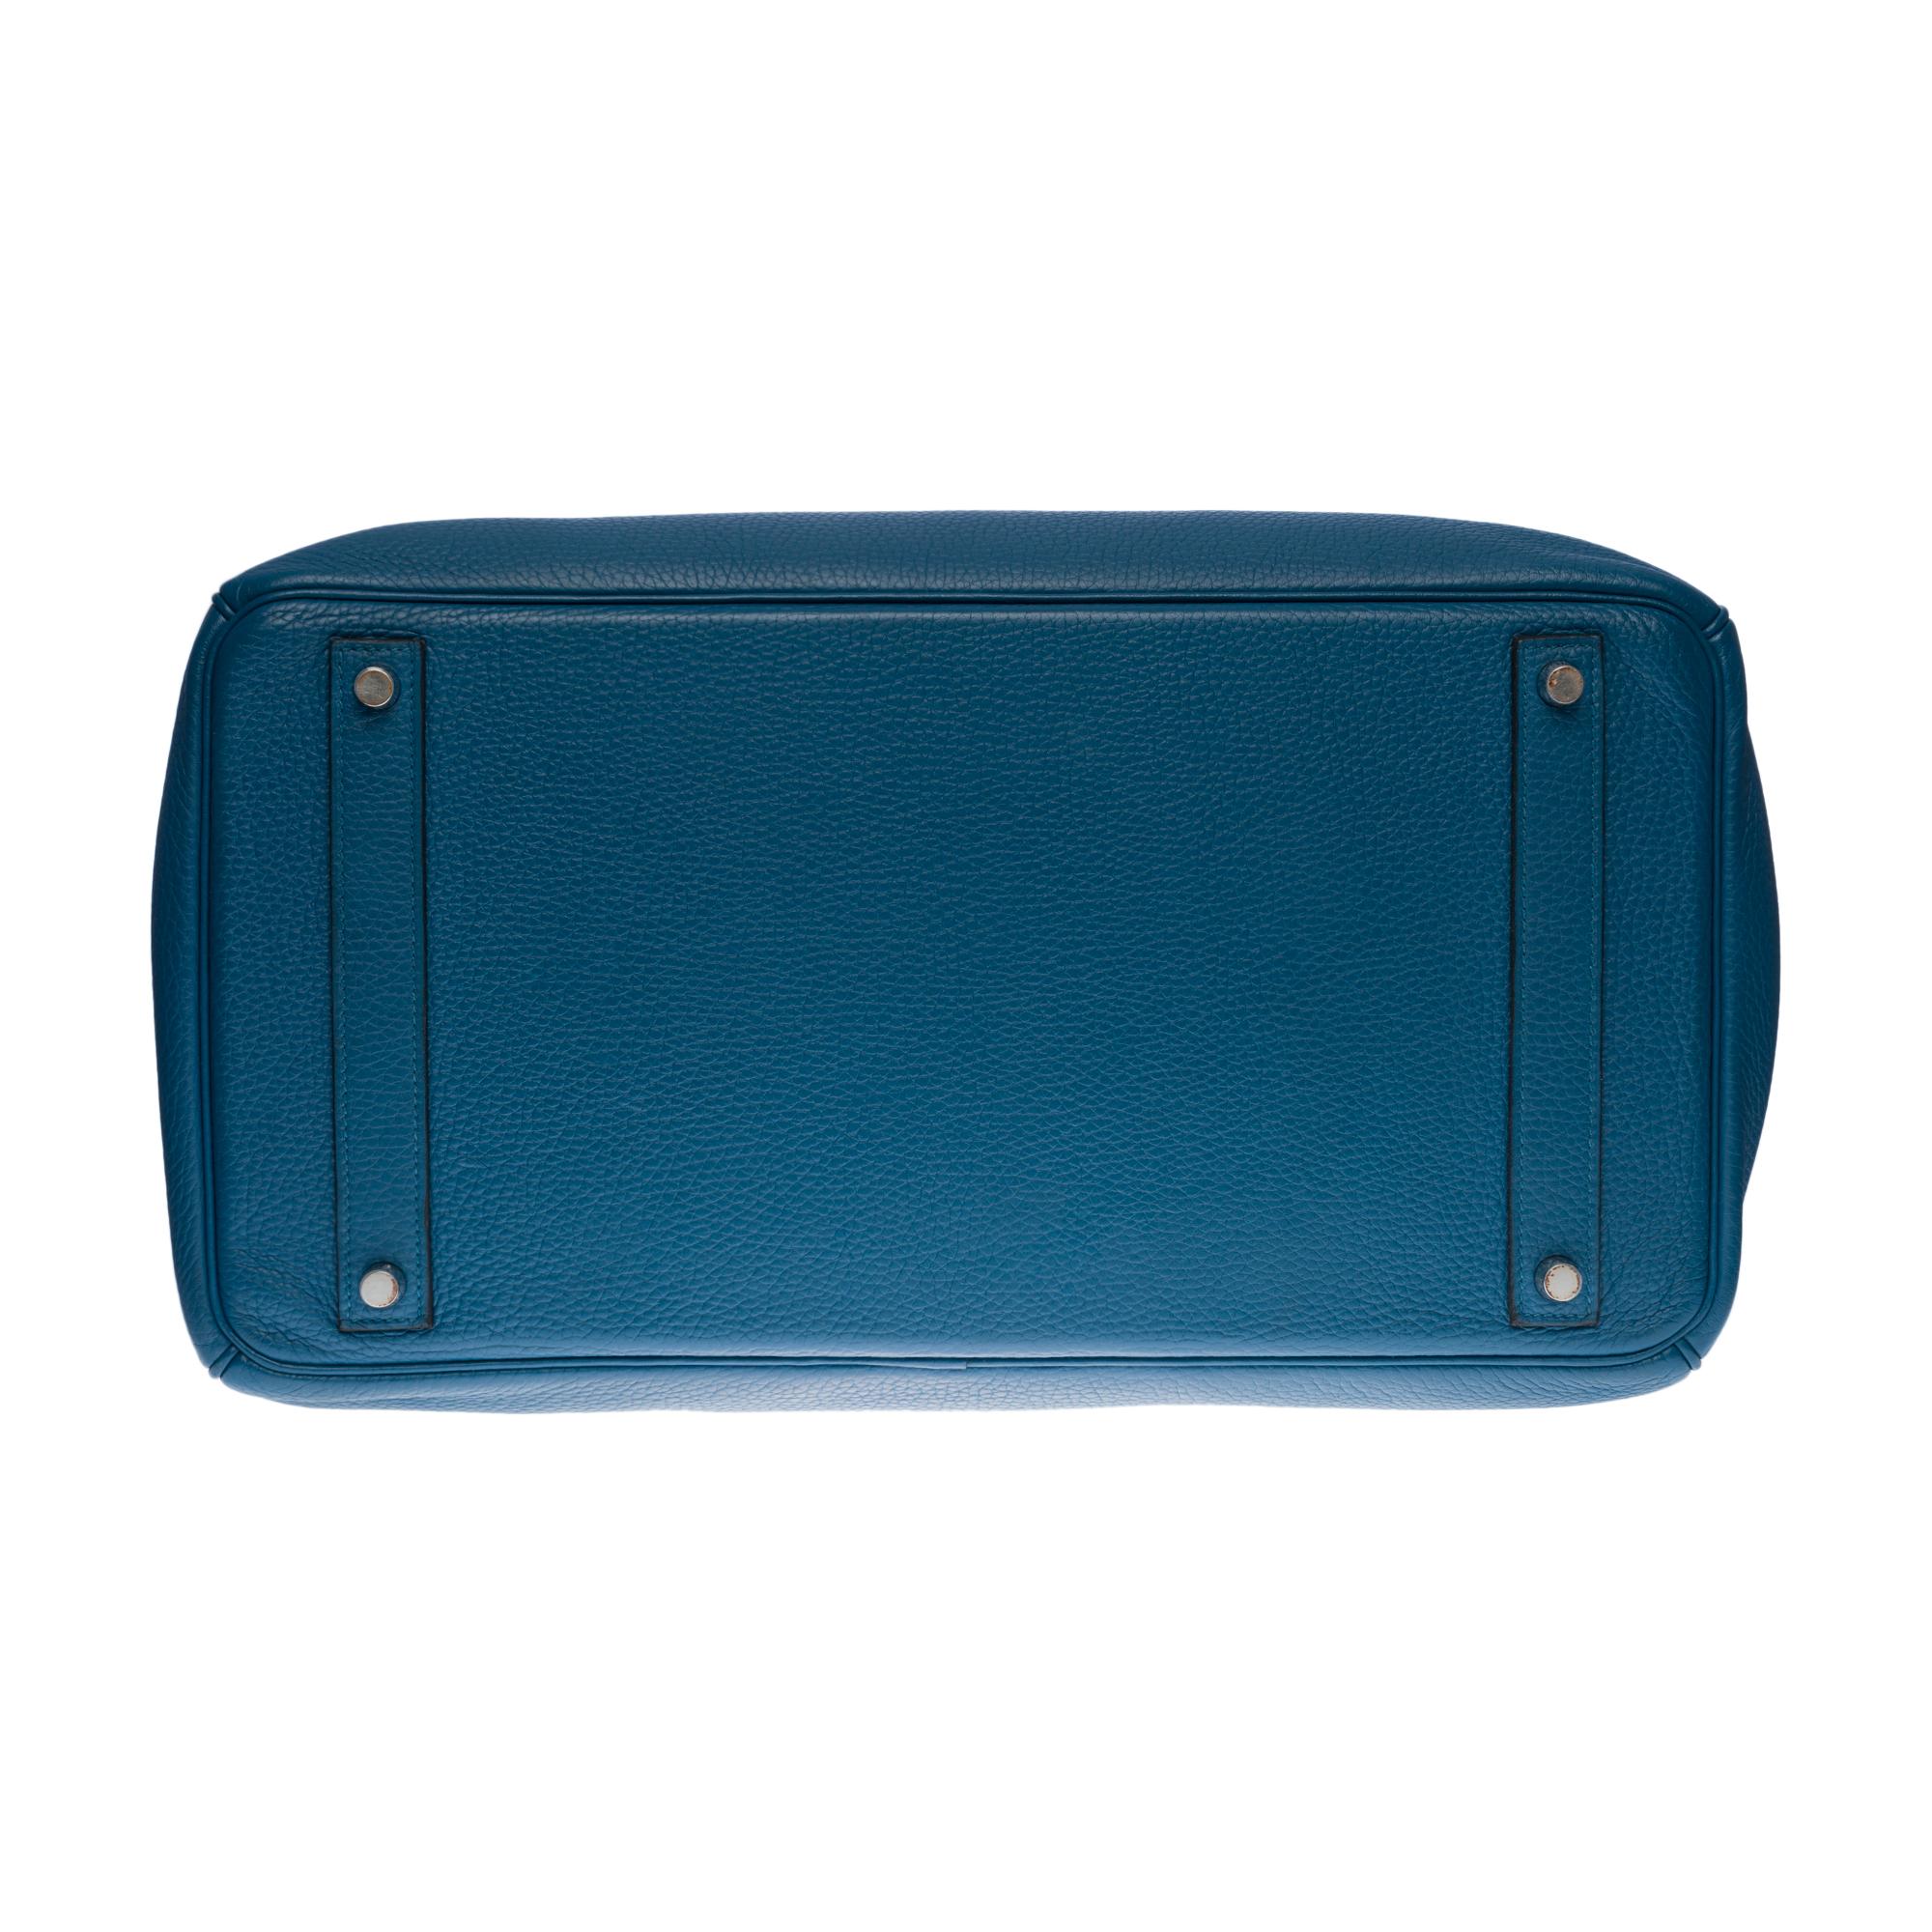 Stunning Hermes Birkin 40cm handbag in Blue Cobalt Togo leather, SHW 2